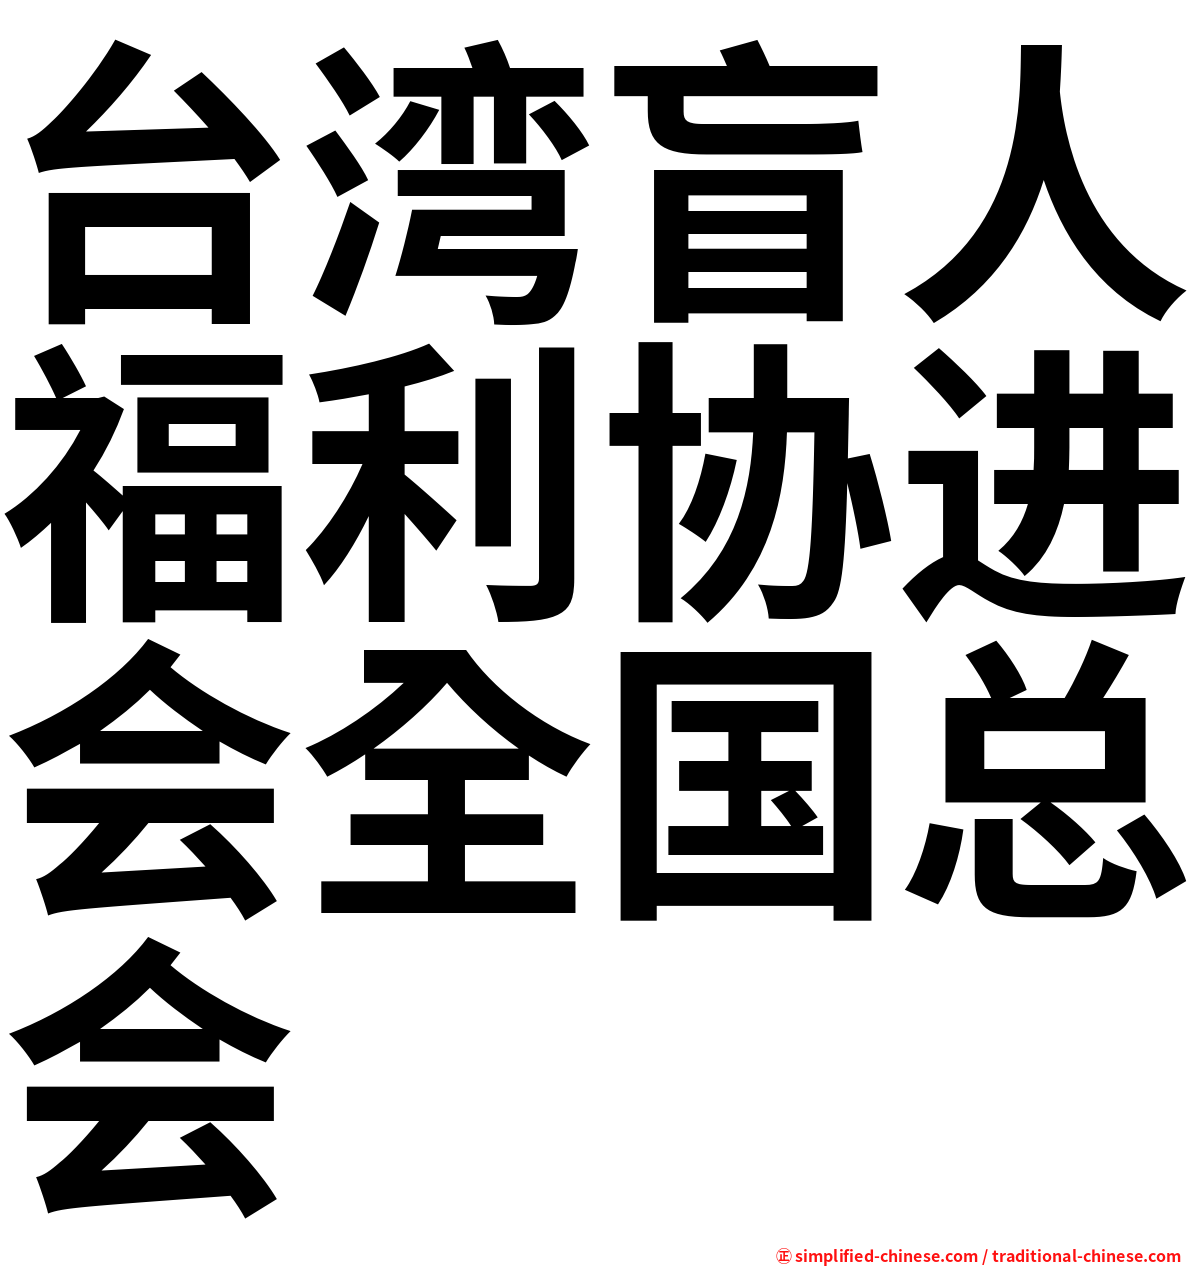 台湾盲人福利协进会全国总会